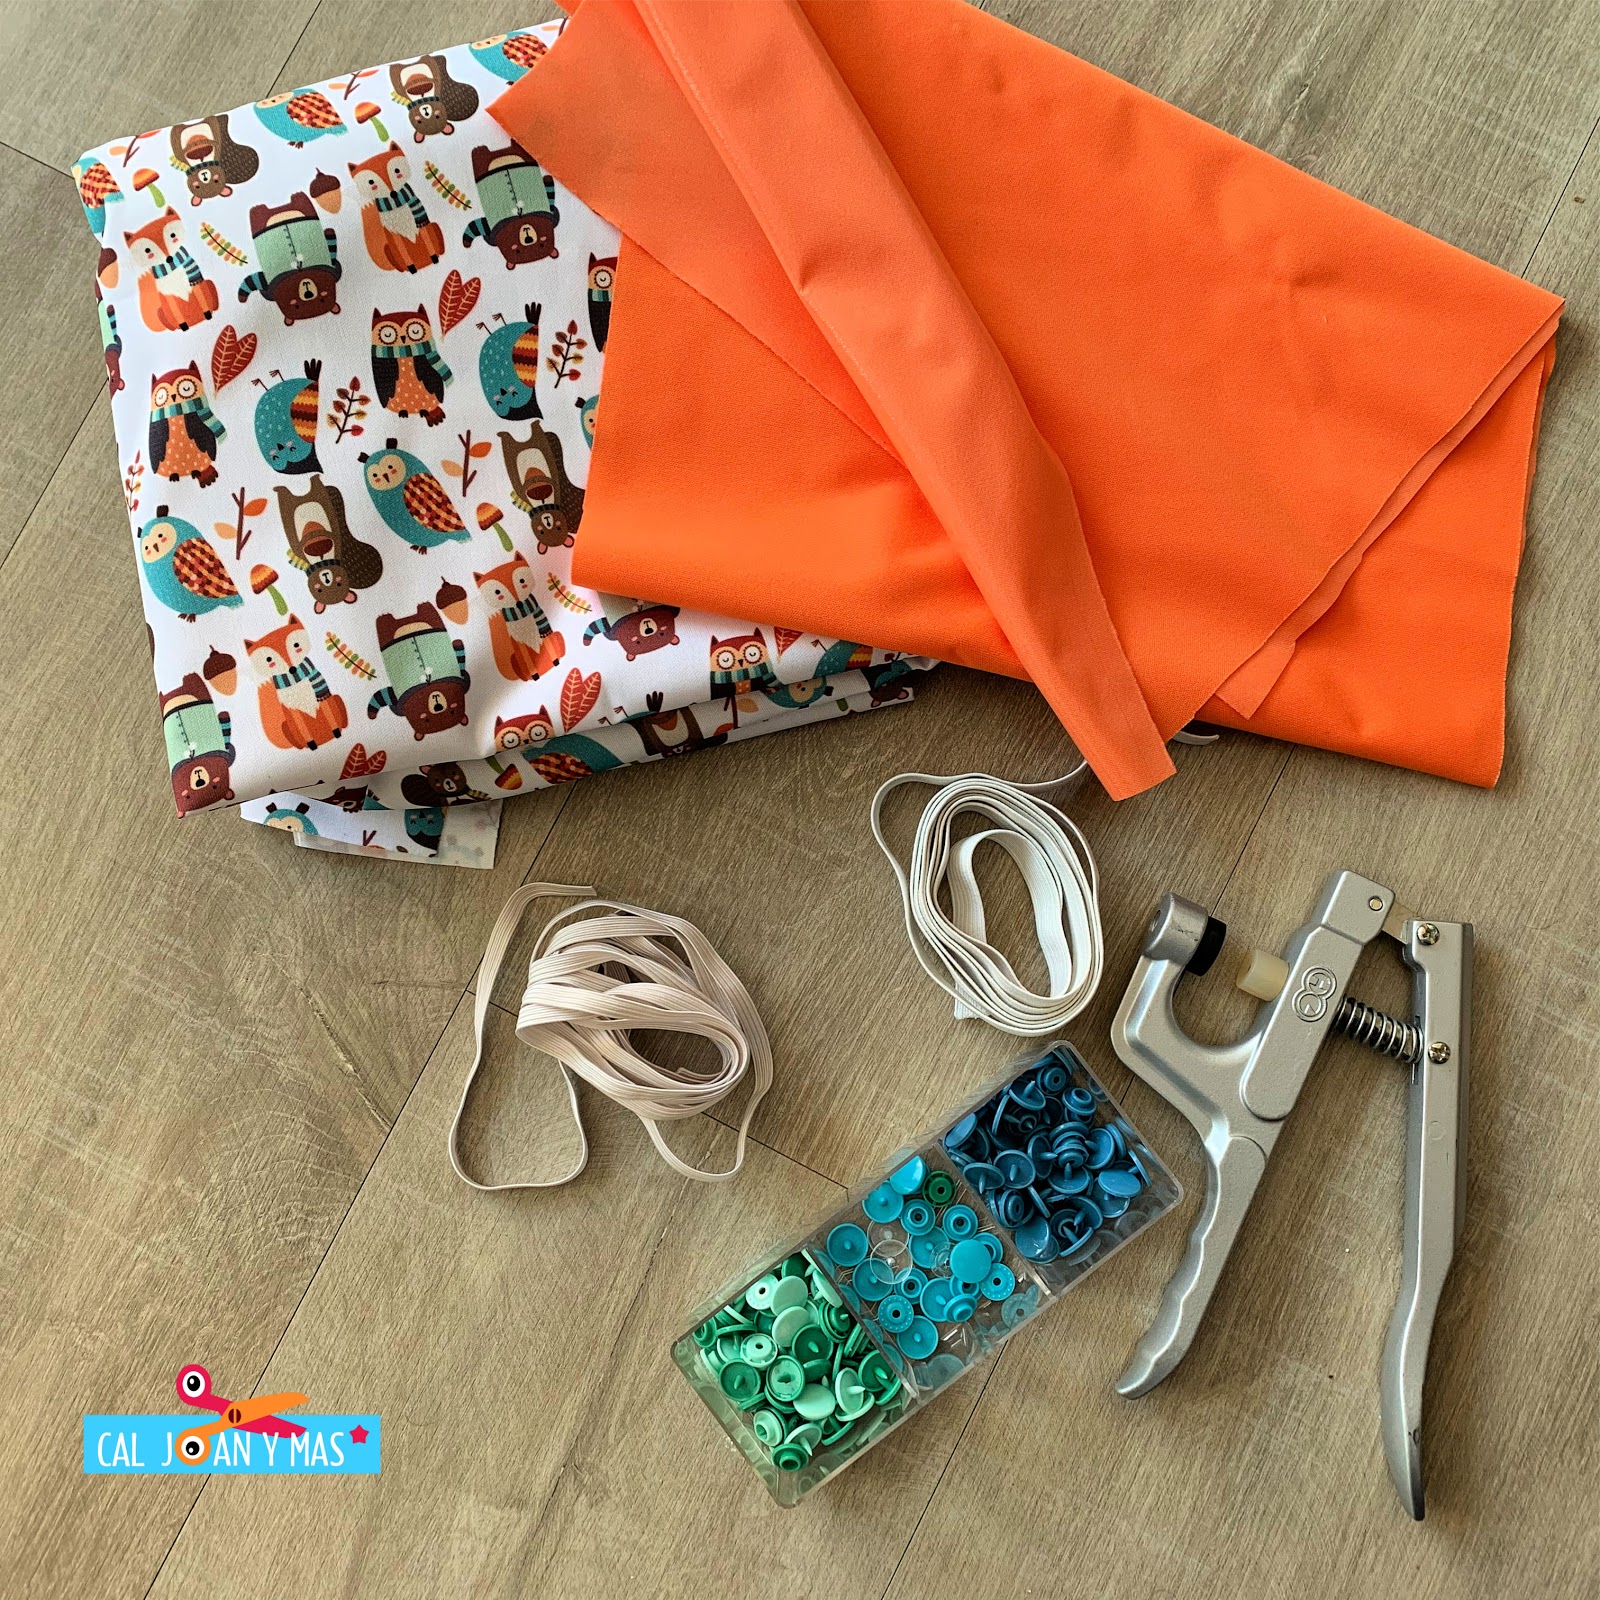 Cómo preparar pañales de tela para usarlos por primera vez